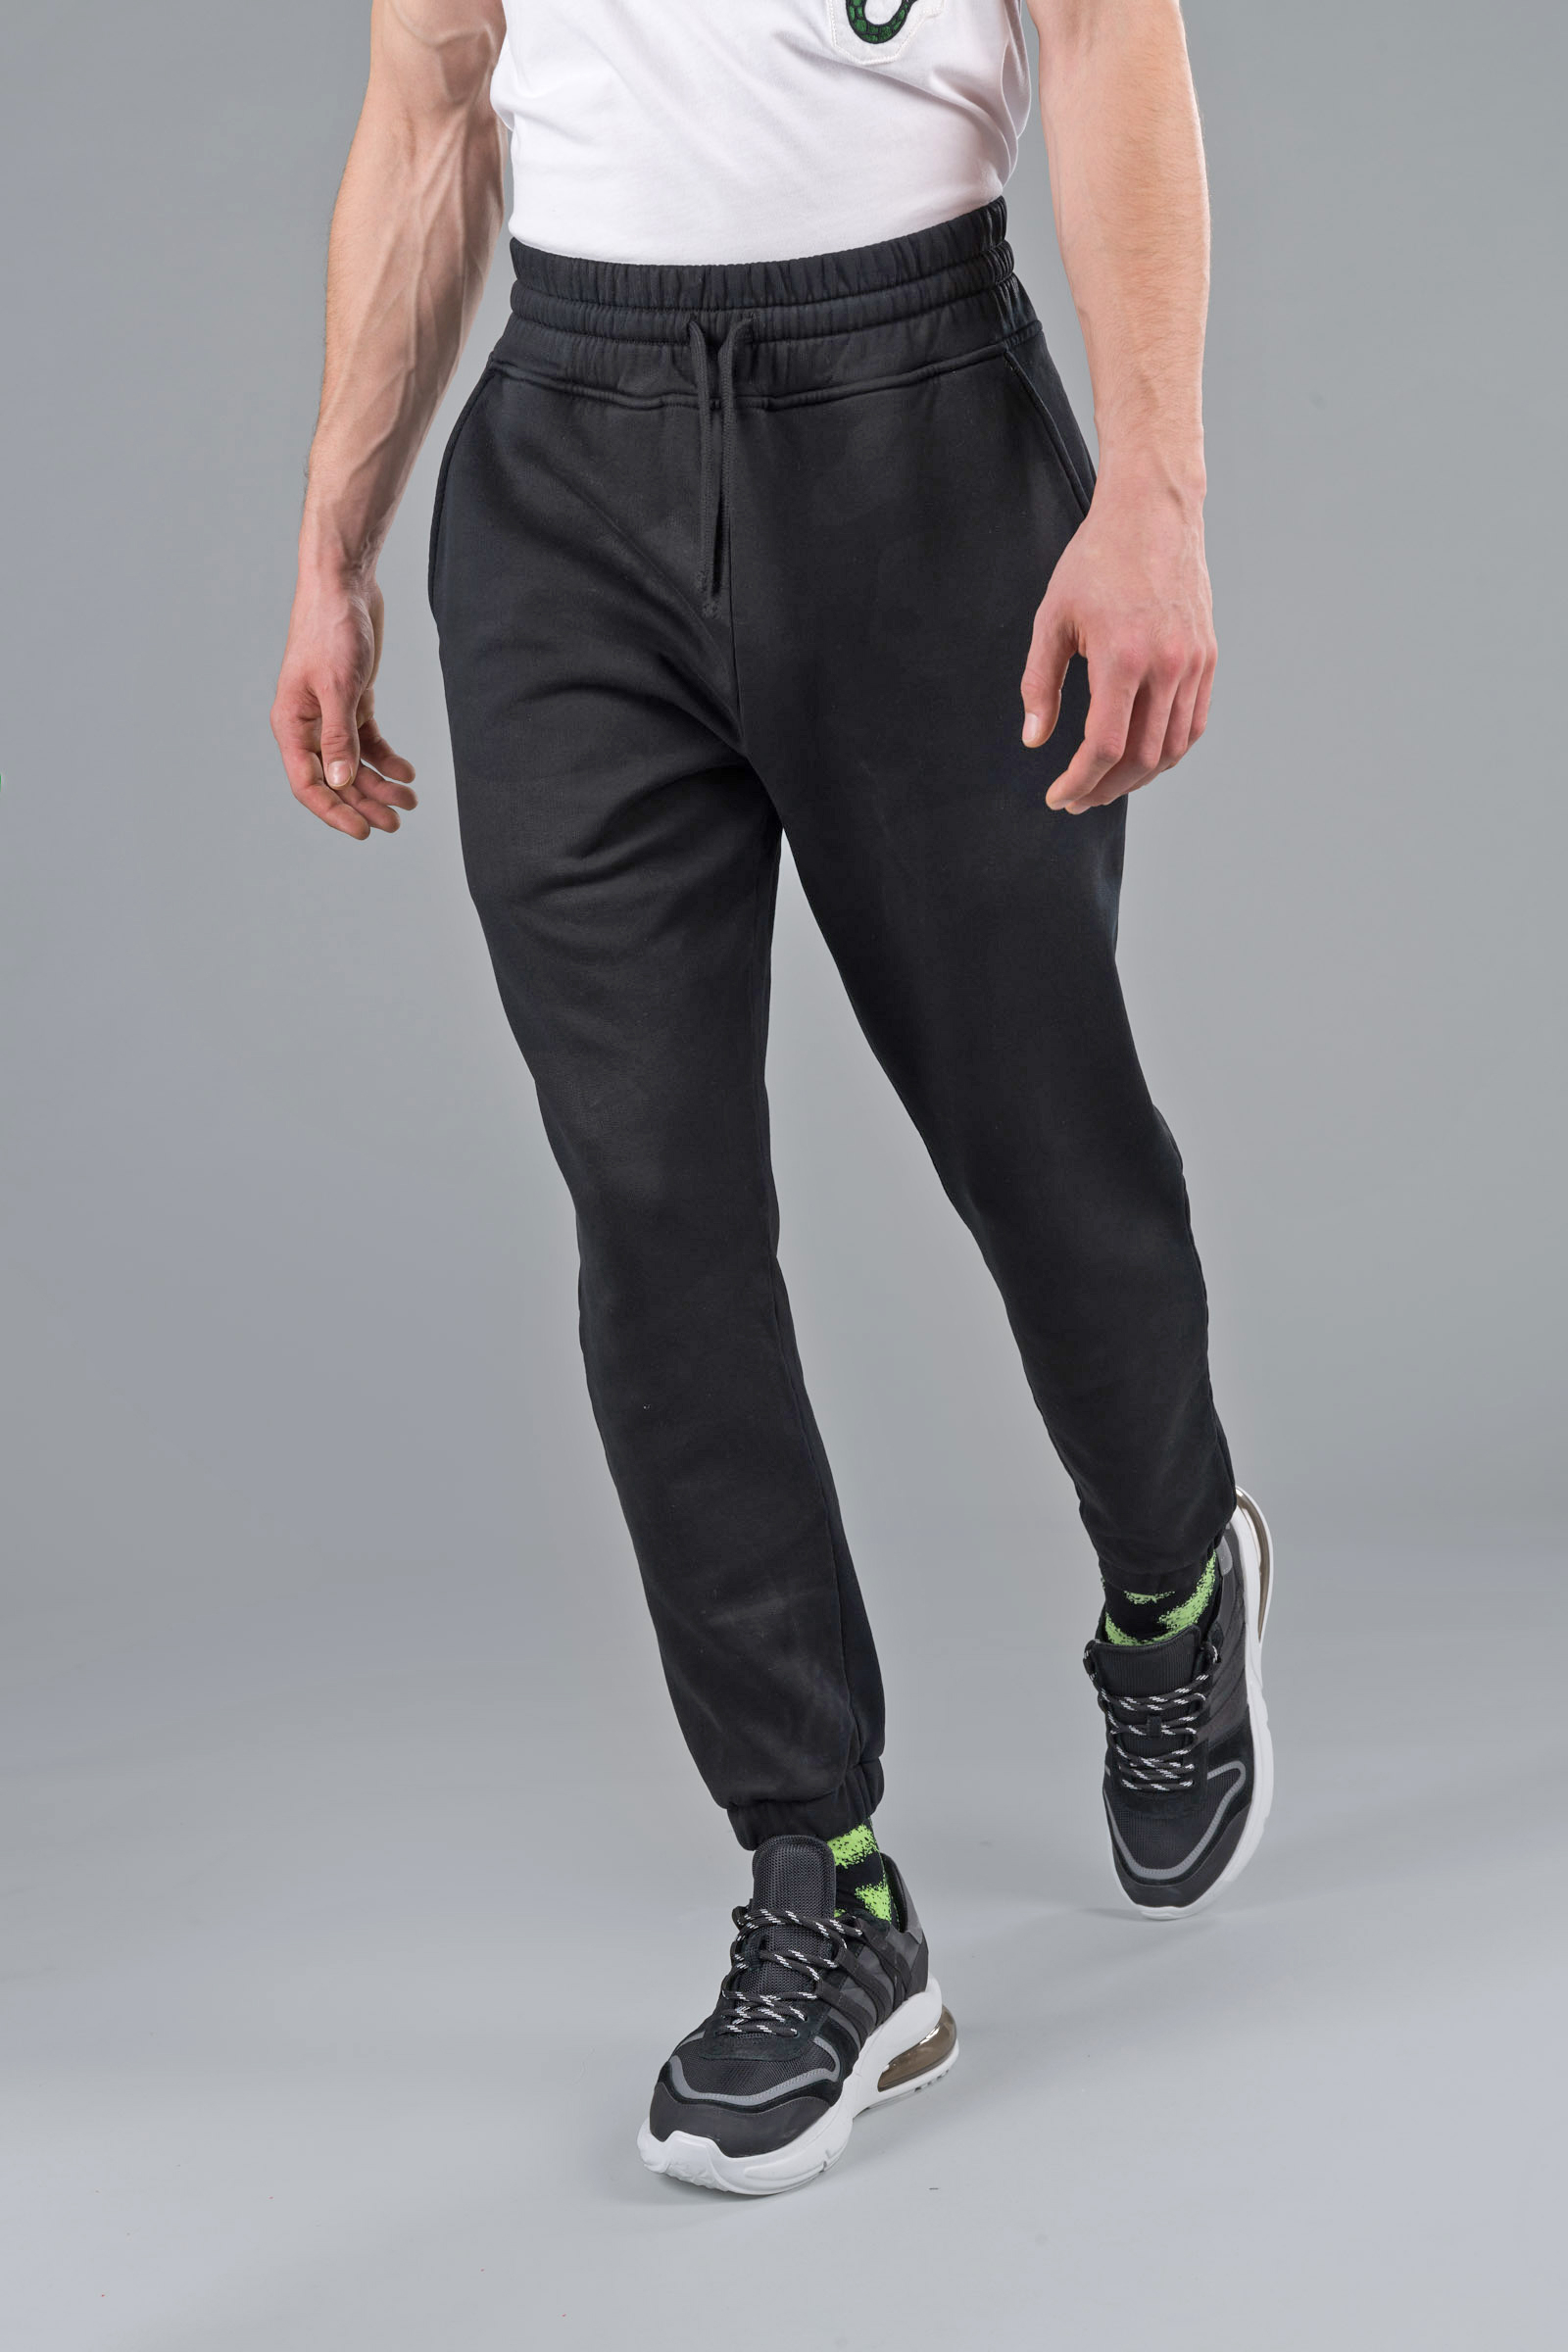 CAMO PANTS - Abbigliamento - Outlet Hydrogen - Abbigliamento sportivo